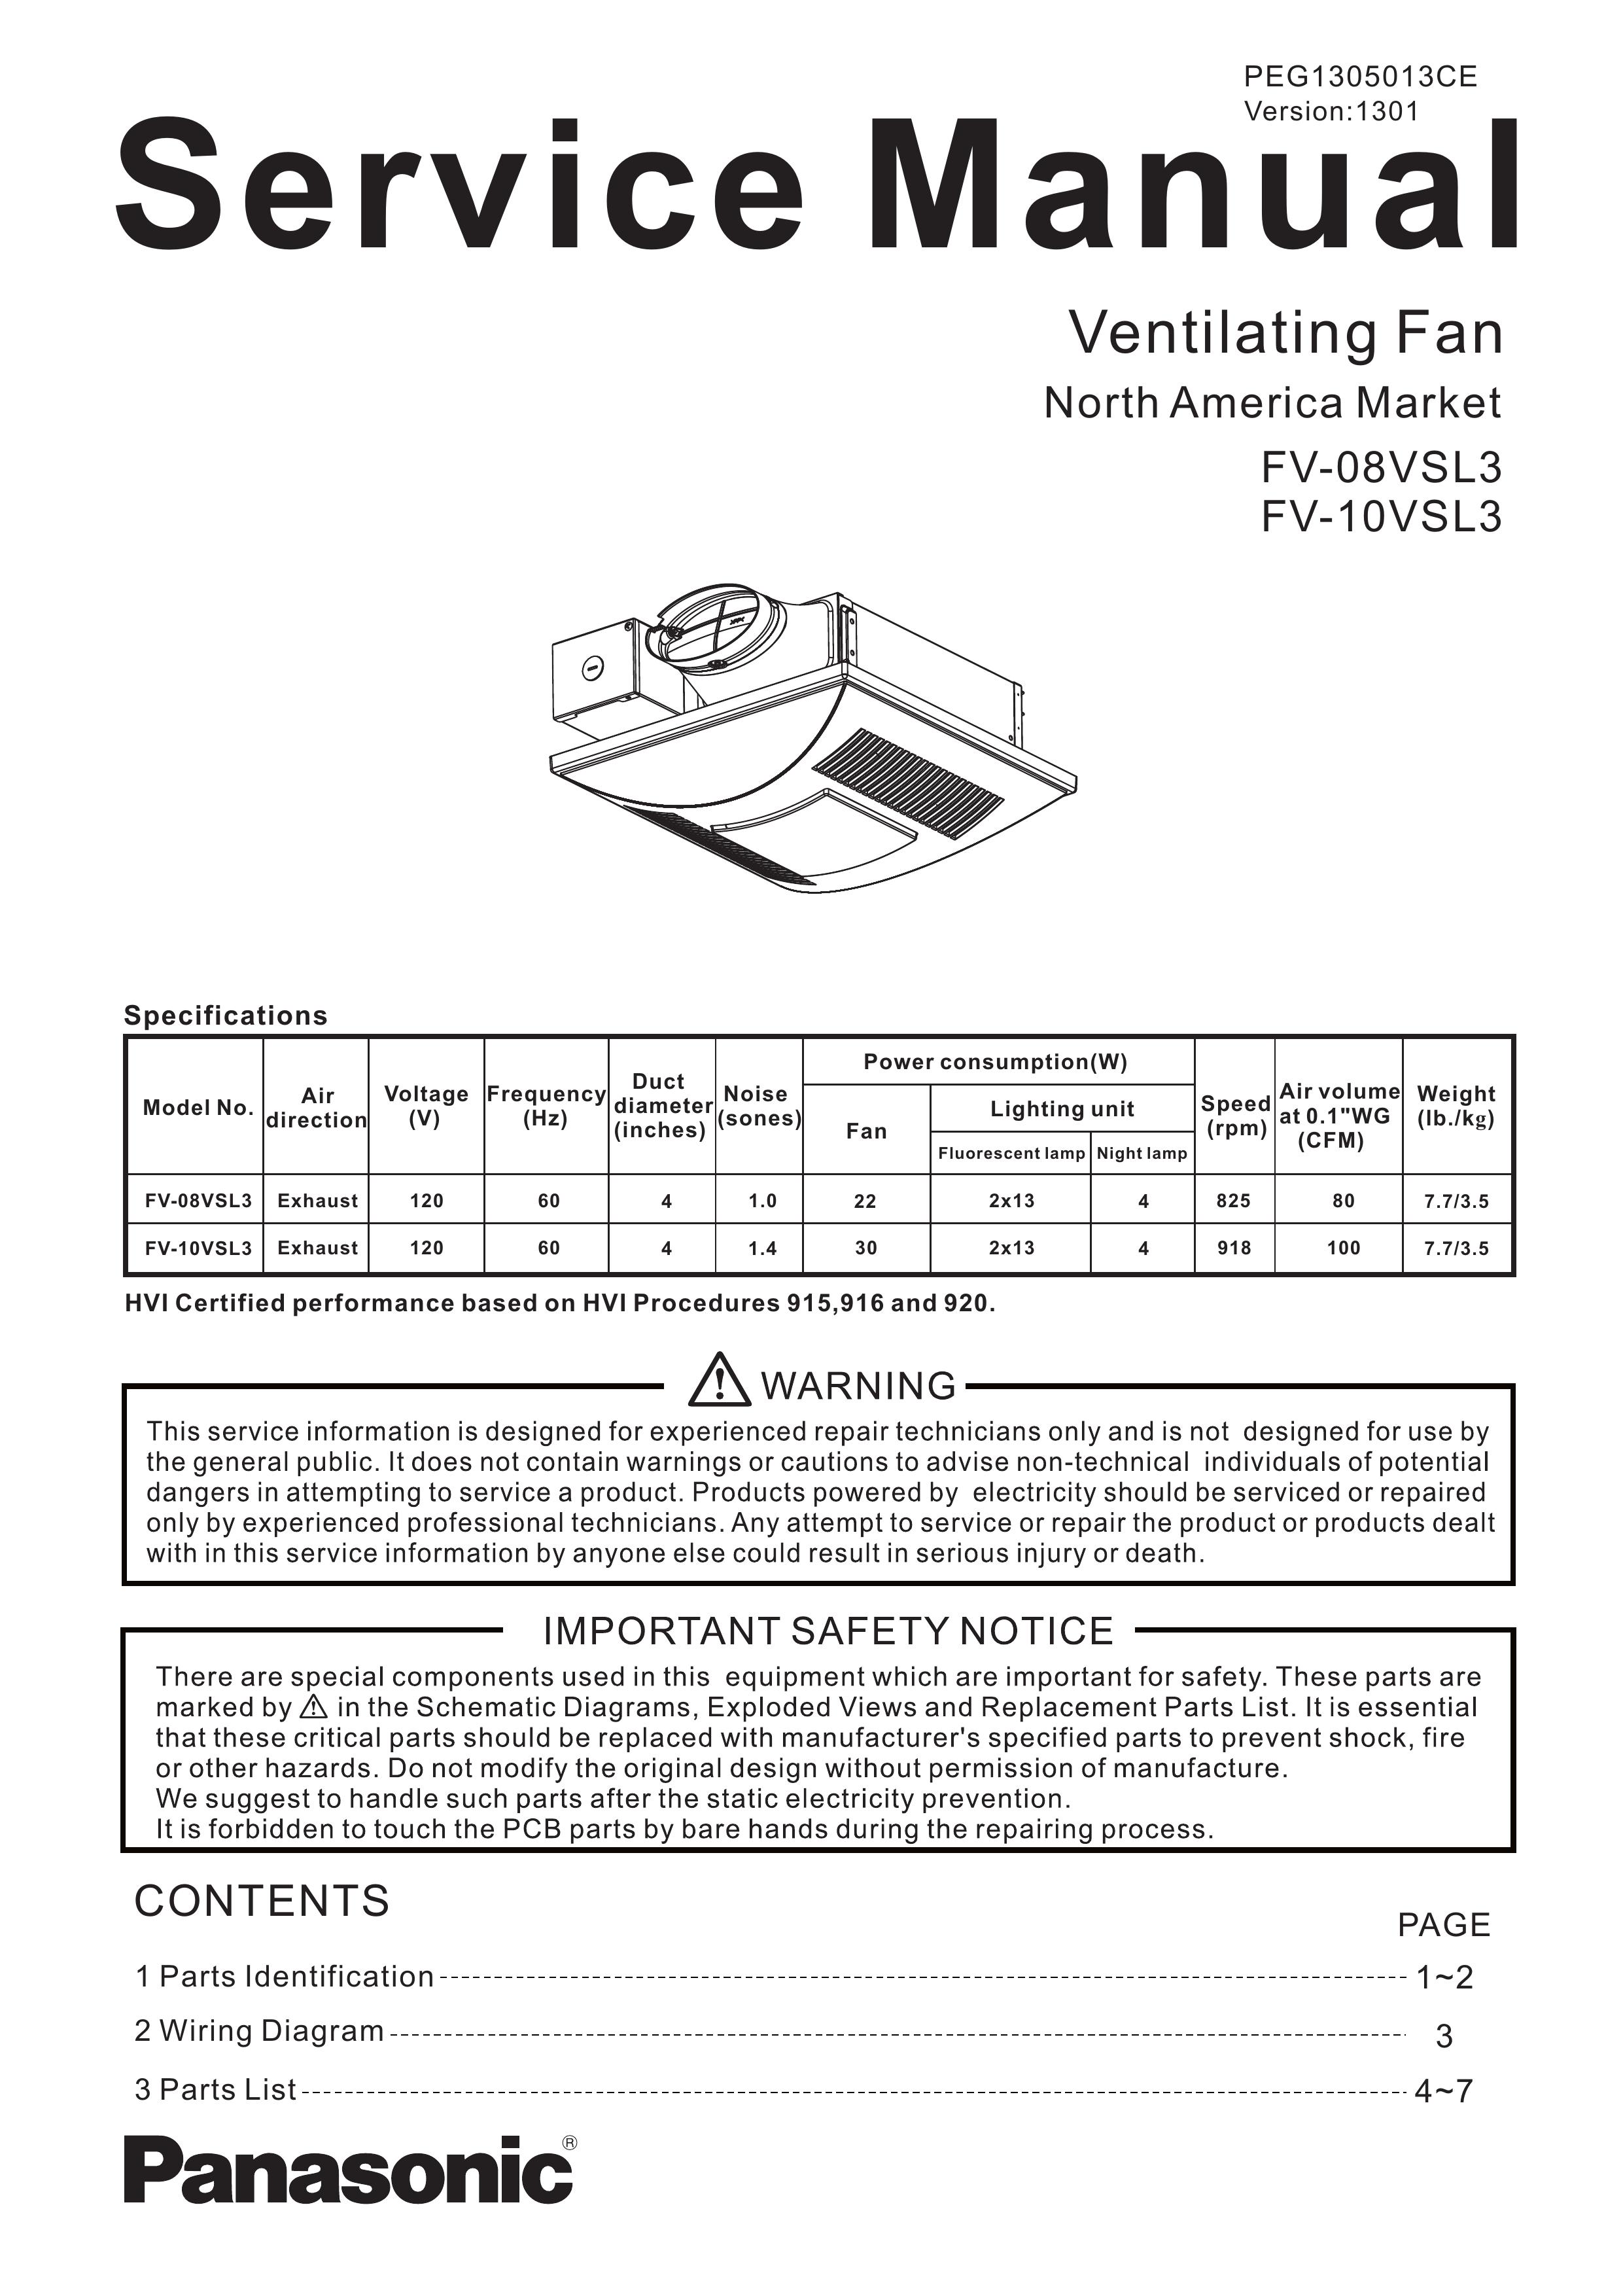 Panasonic FV-10VSL3 Ventilation Hood User Manual